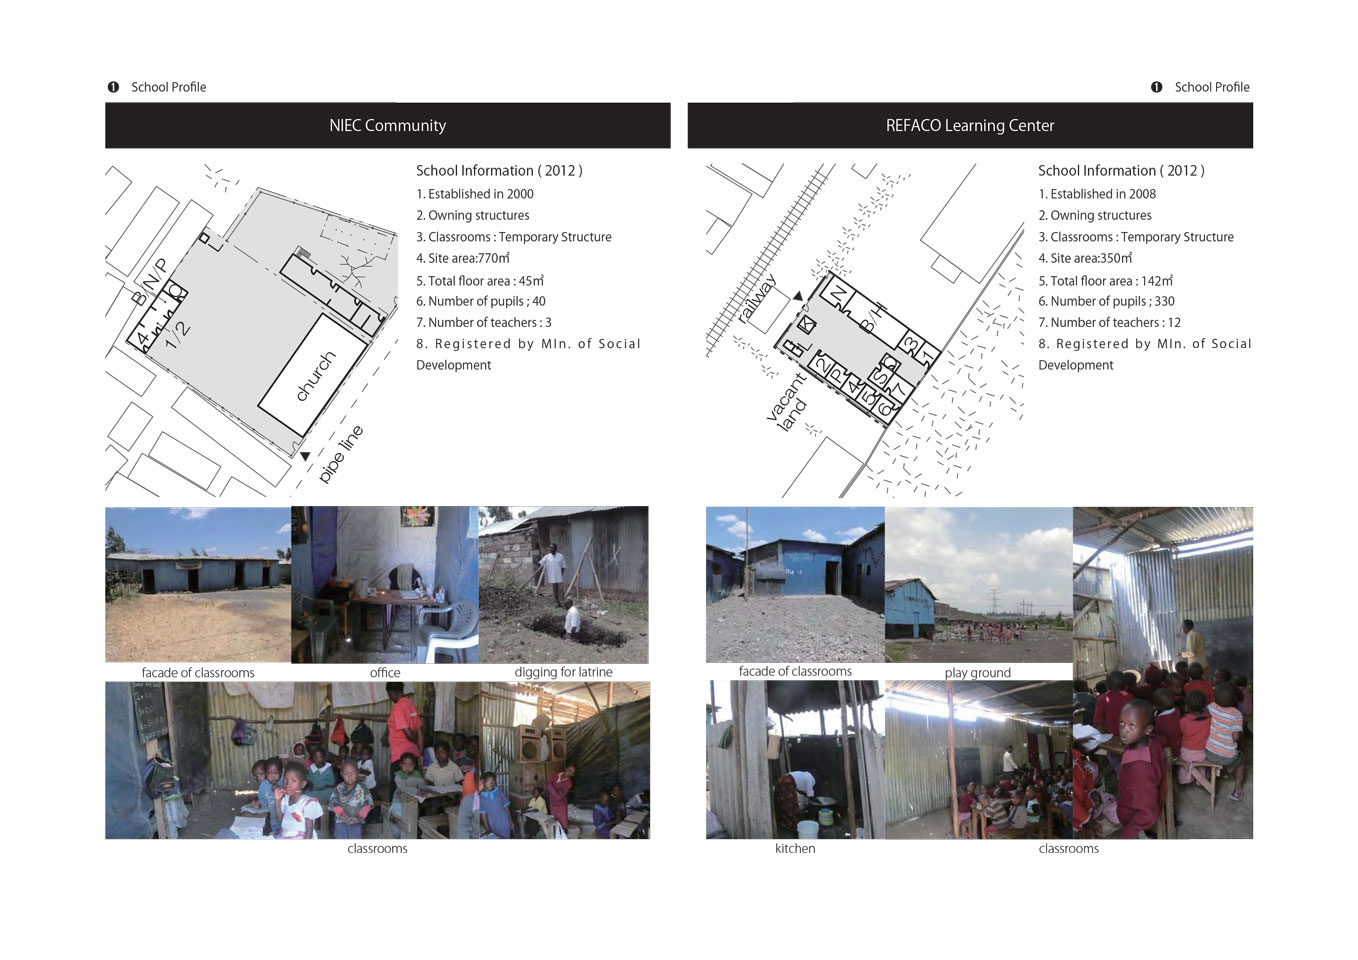 Environmental Settings of Non-formal Schools in Mukuru